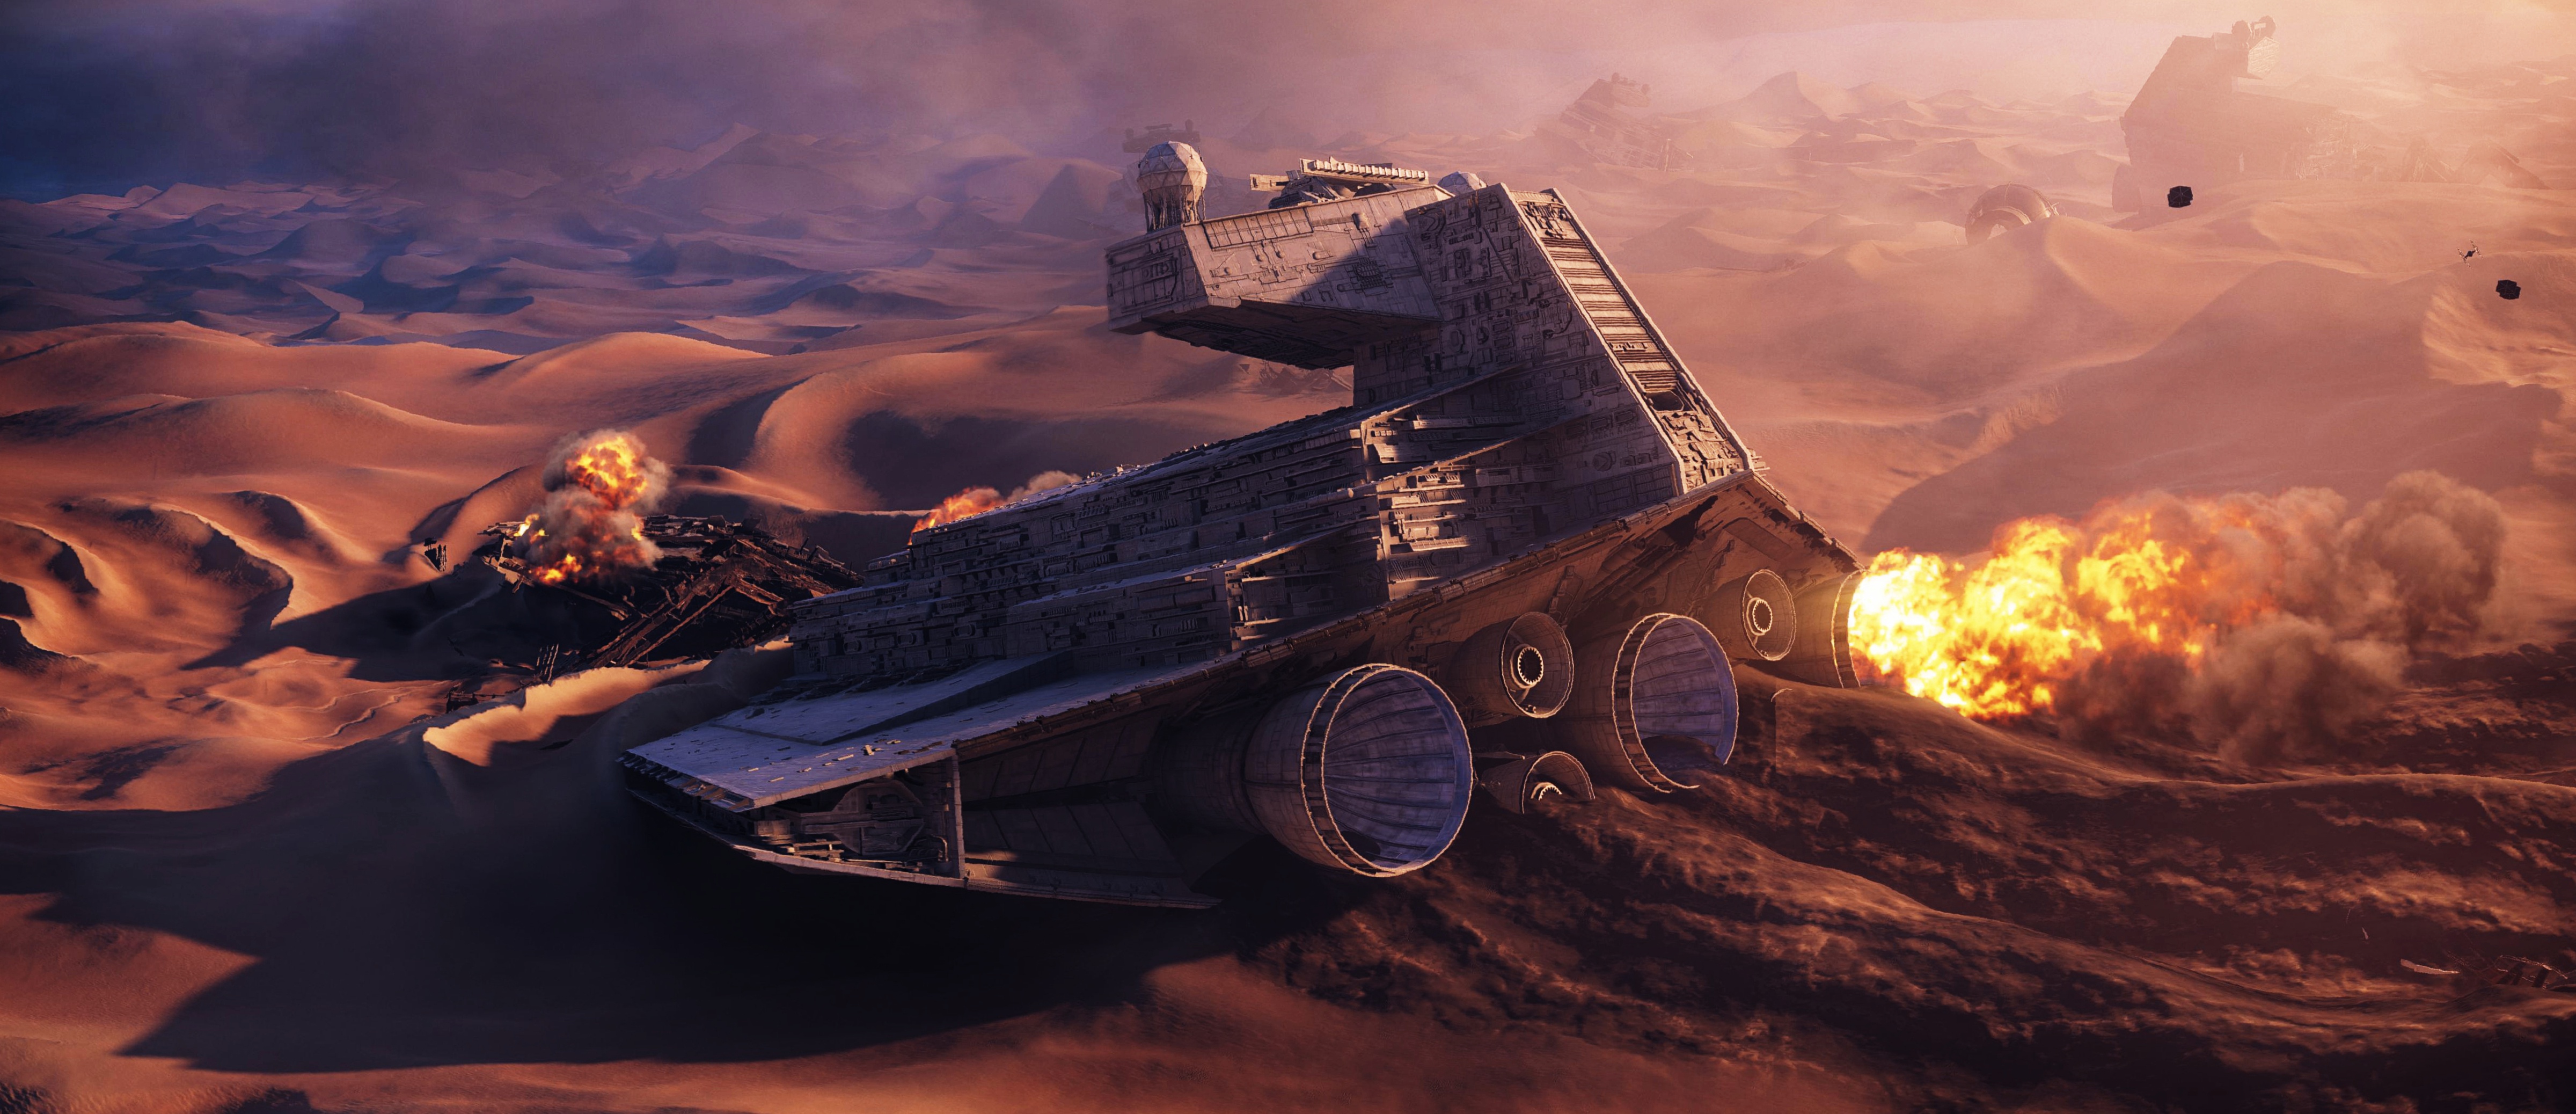 Star Wars, Star Destroyer, TIE Fighter, Sand, Desert Wallpaper